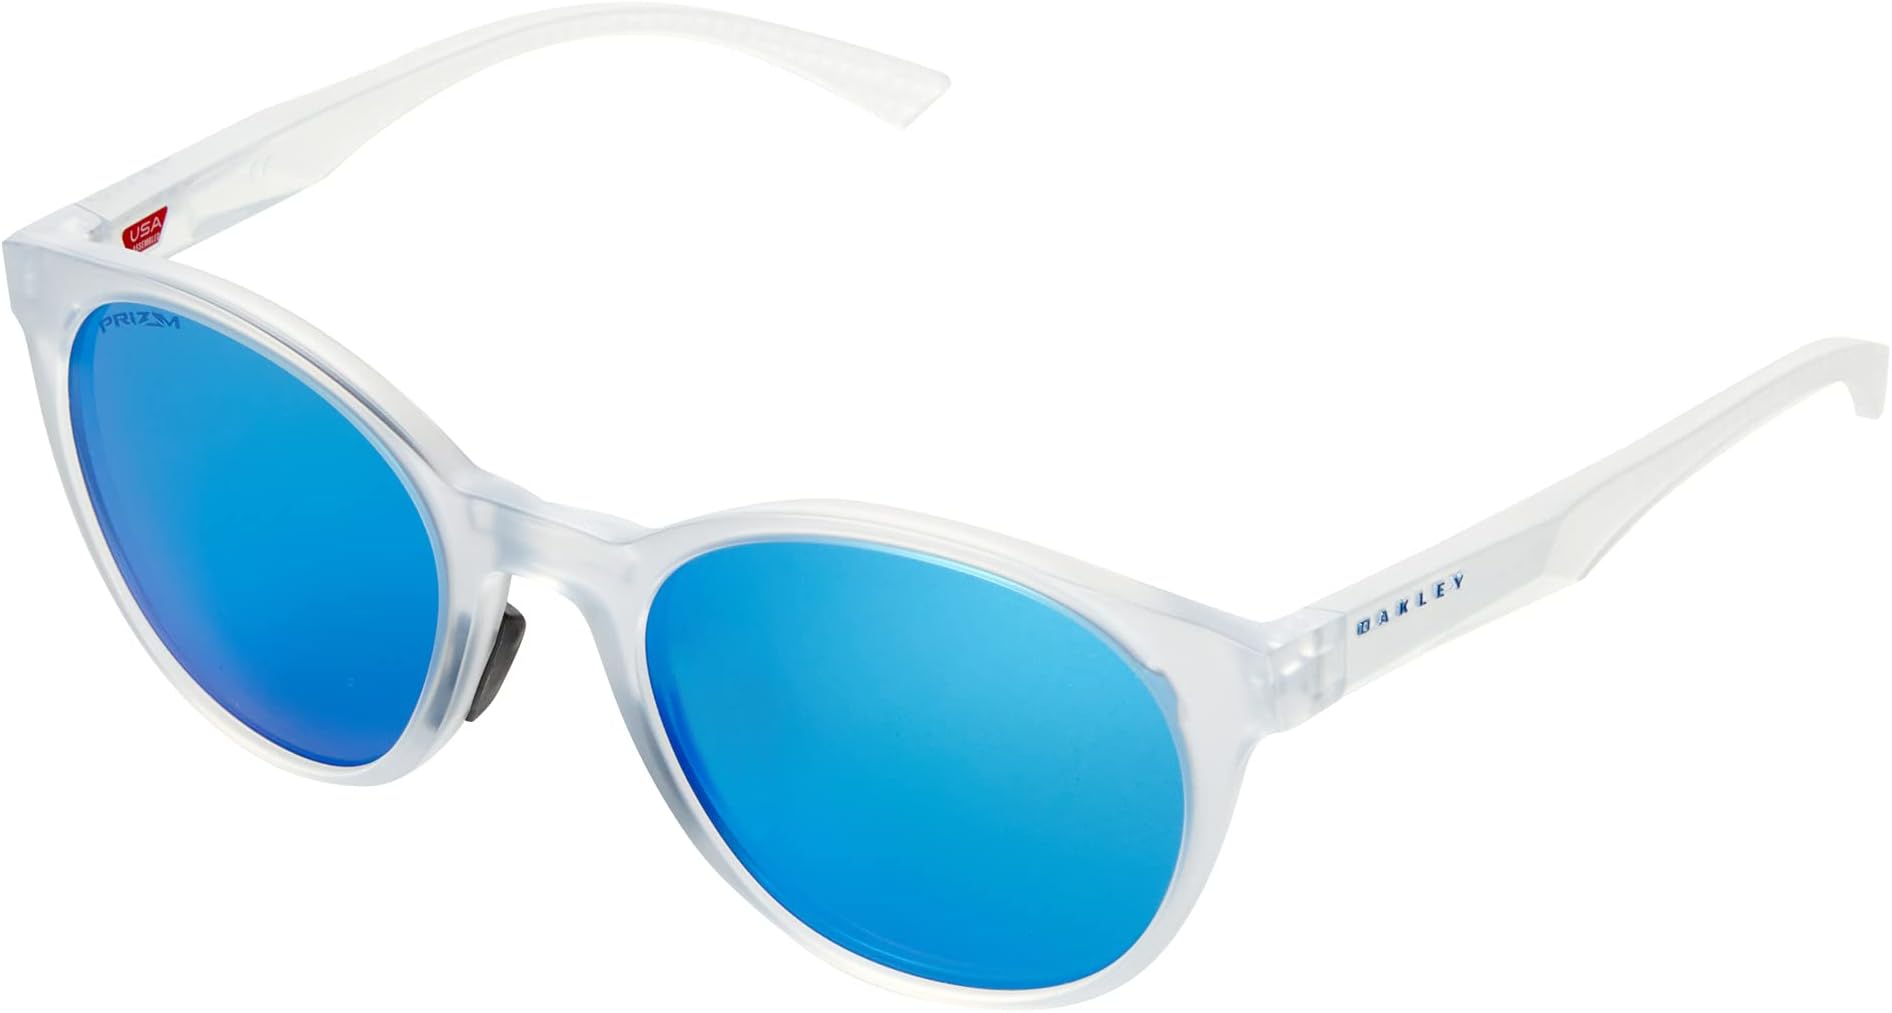 Солнцезащитные очки 52 mm Spindrift Oakley, цвет Matte Clear/Prizm Sapphire цена и фото